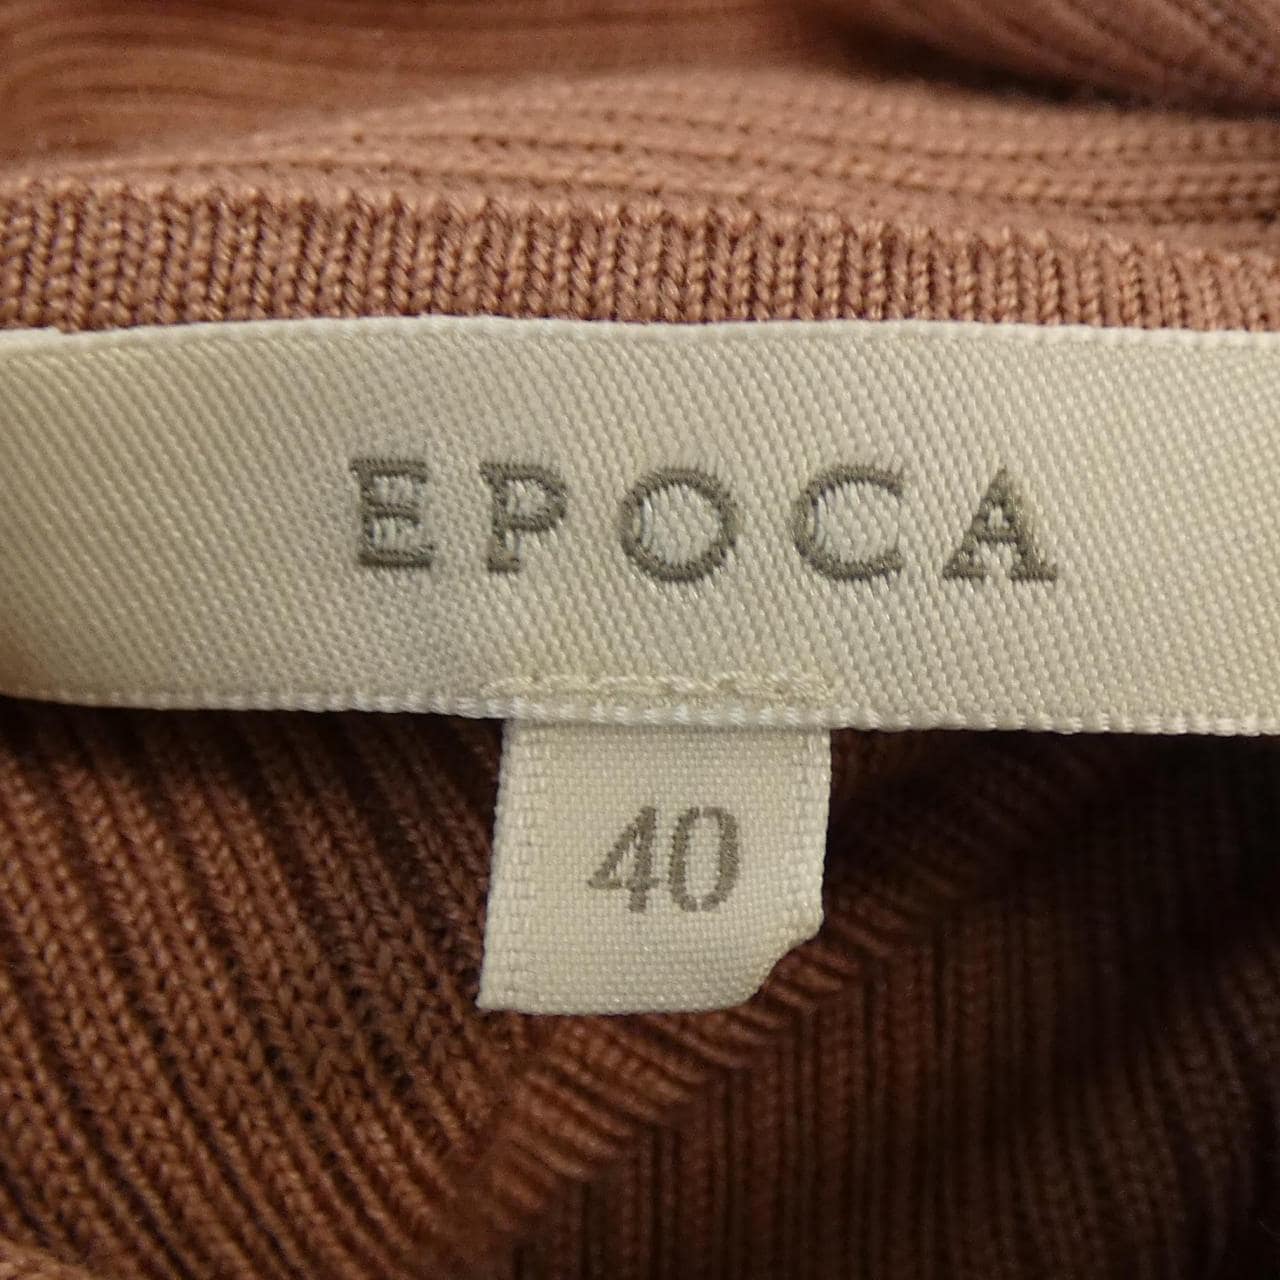 Epoca EPOCA針織衫